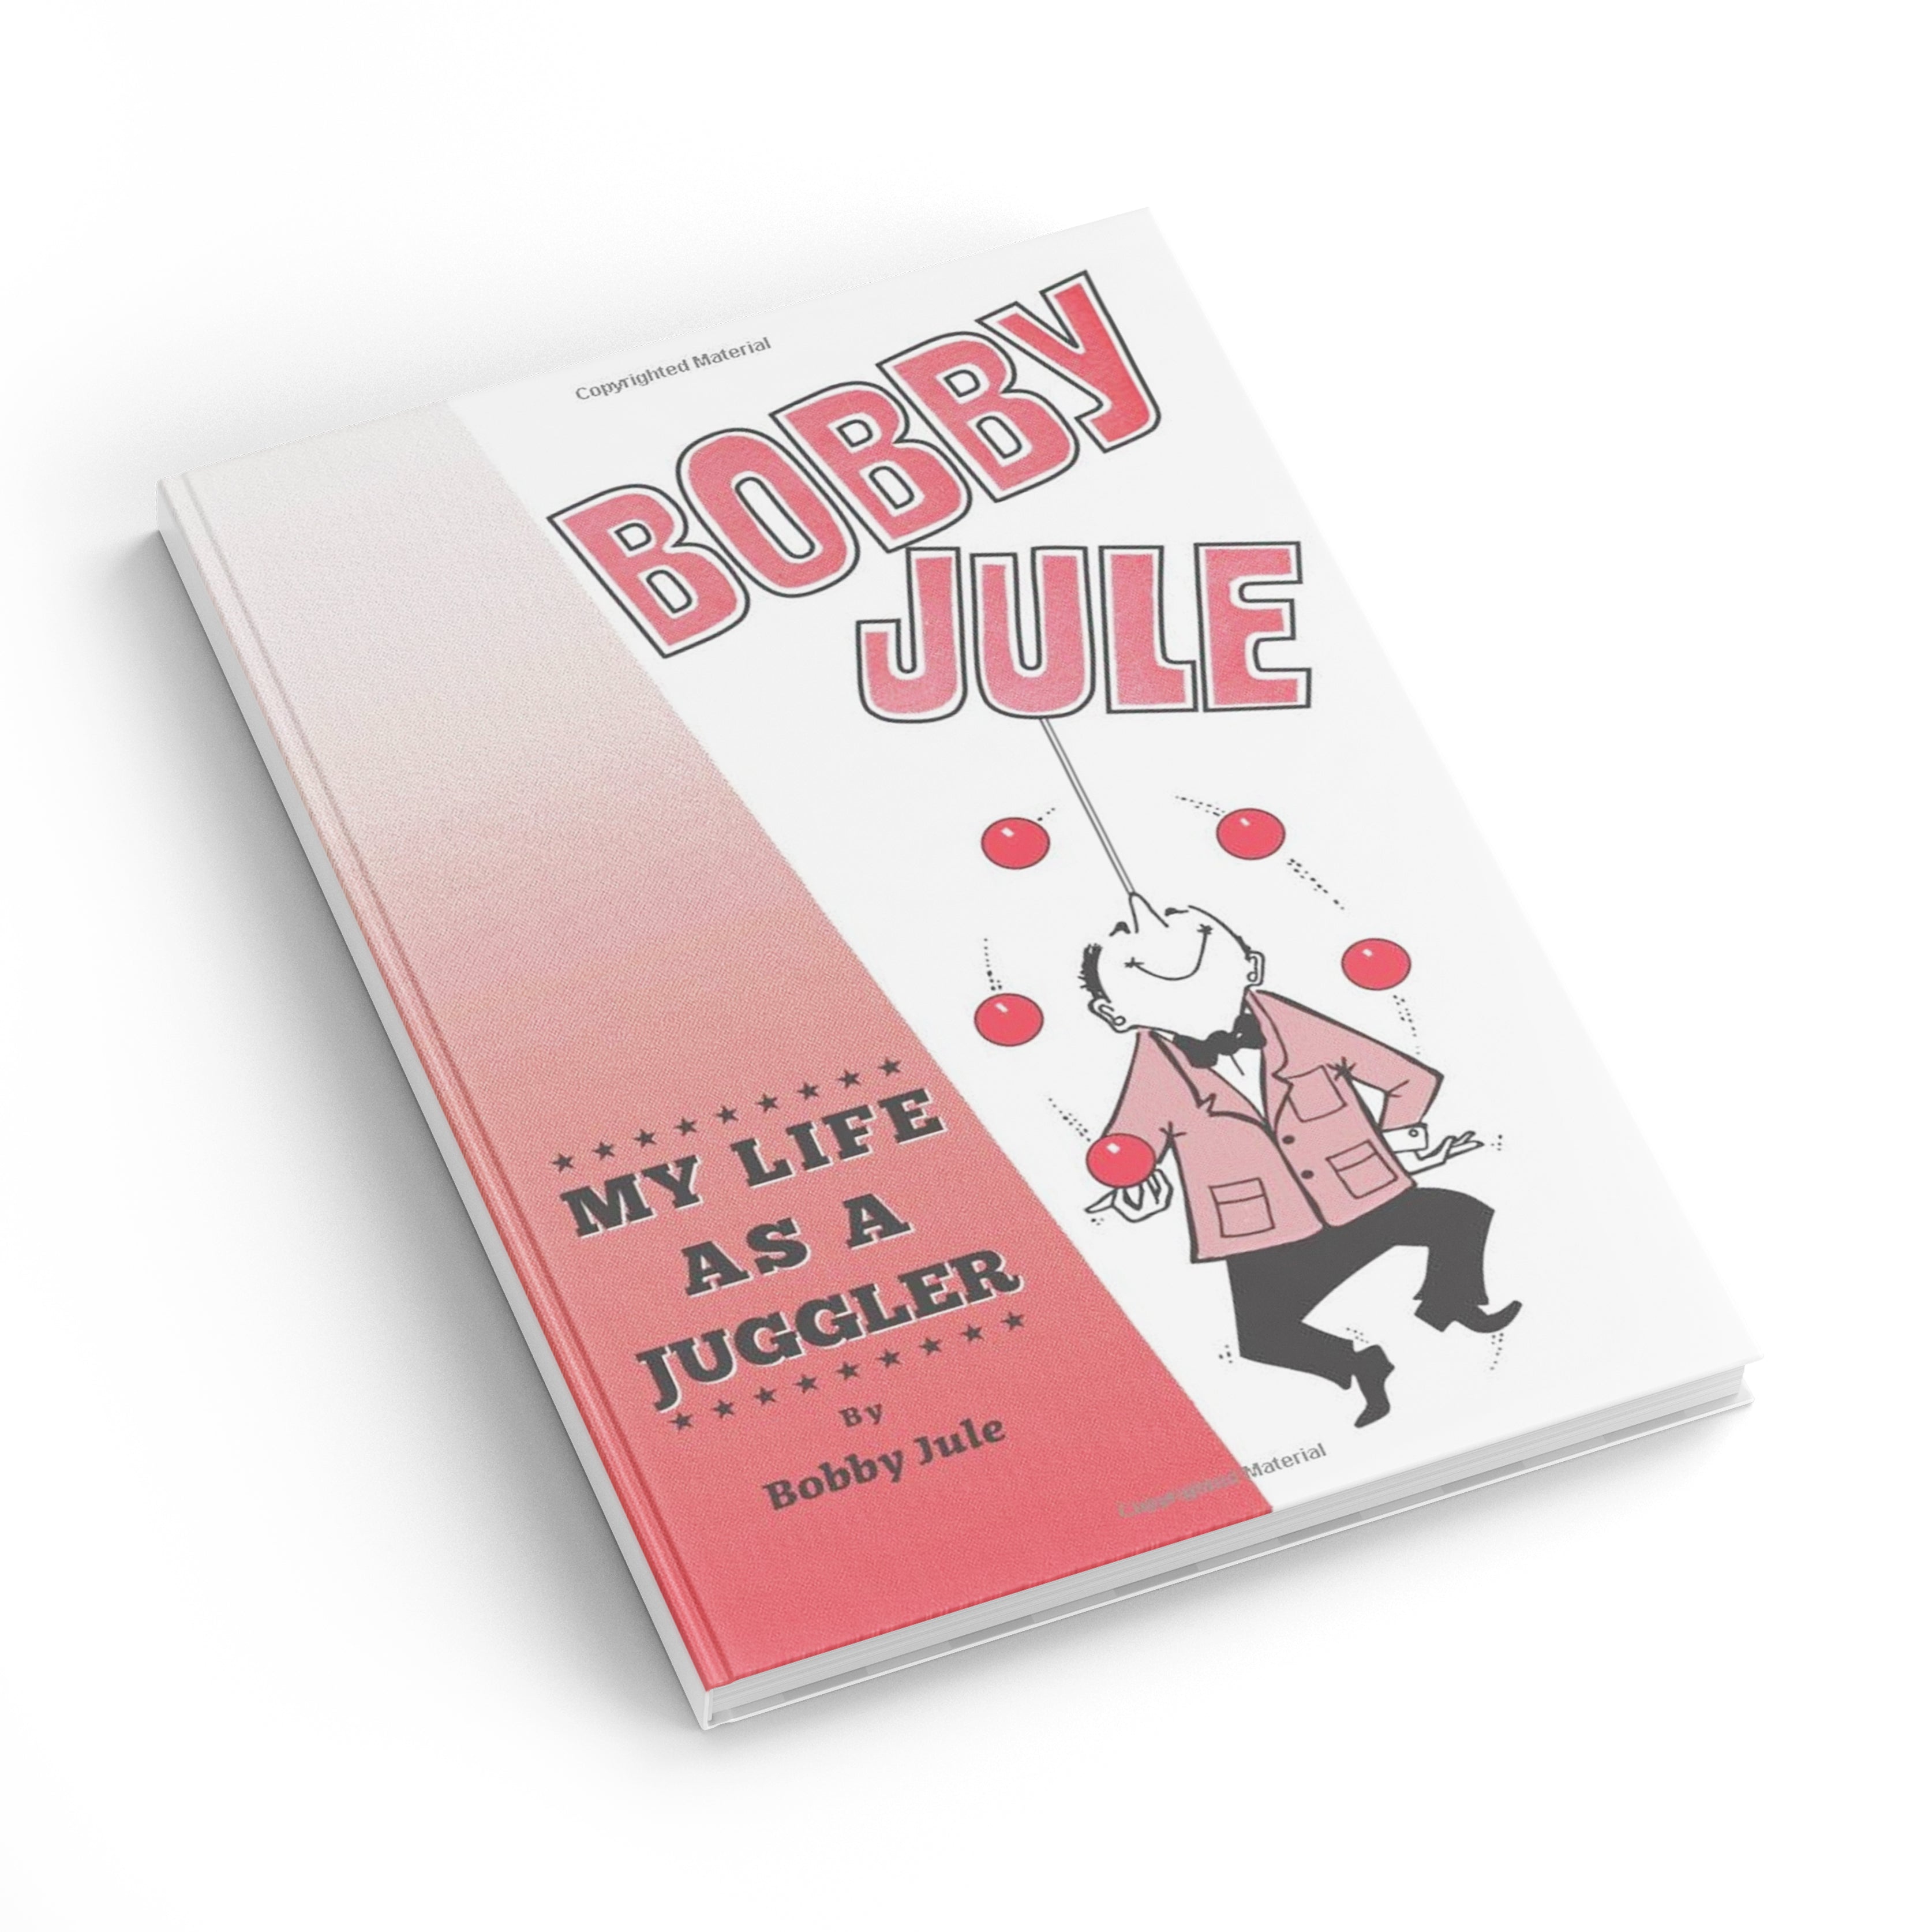 My Life as a Juggler - Bobby Jule